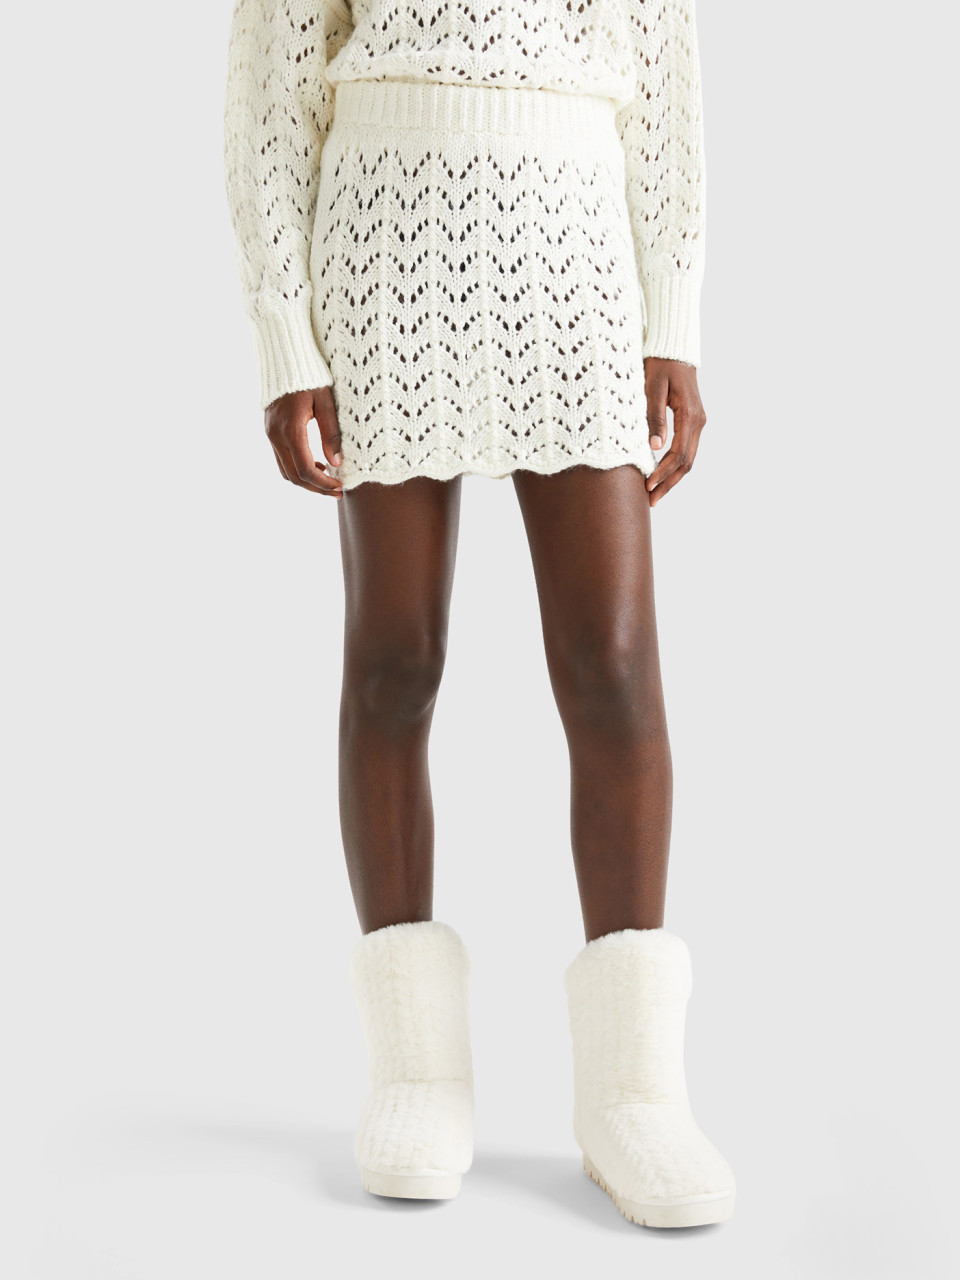 Benetton, Crochet Mini Skirt, White, Women